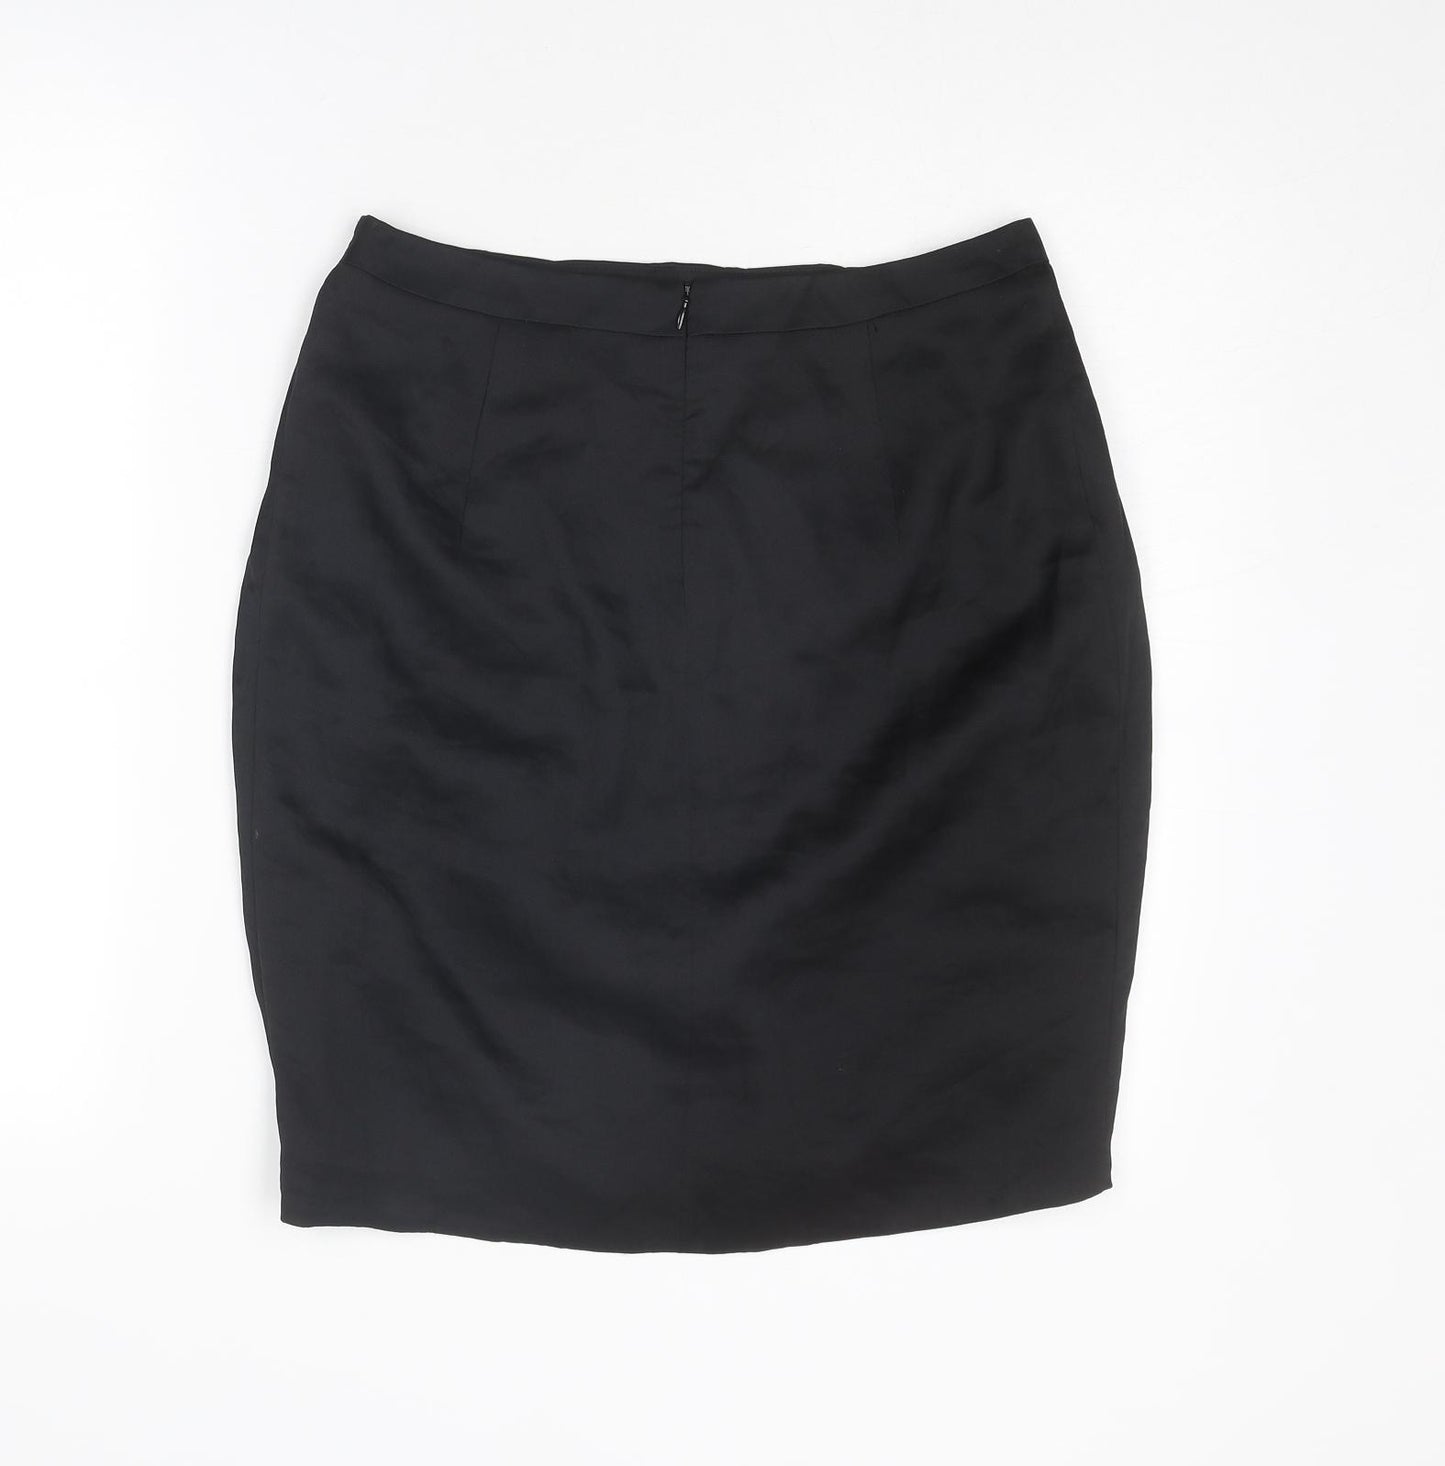 Mart Visser Womens Black Acetate Tulip Skirt Size 10 Zip